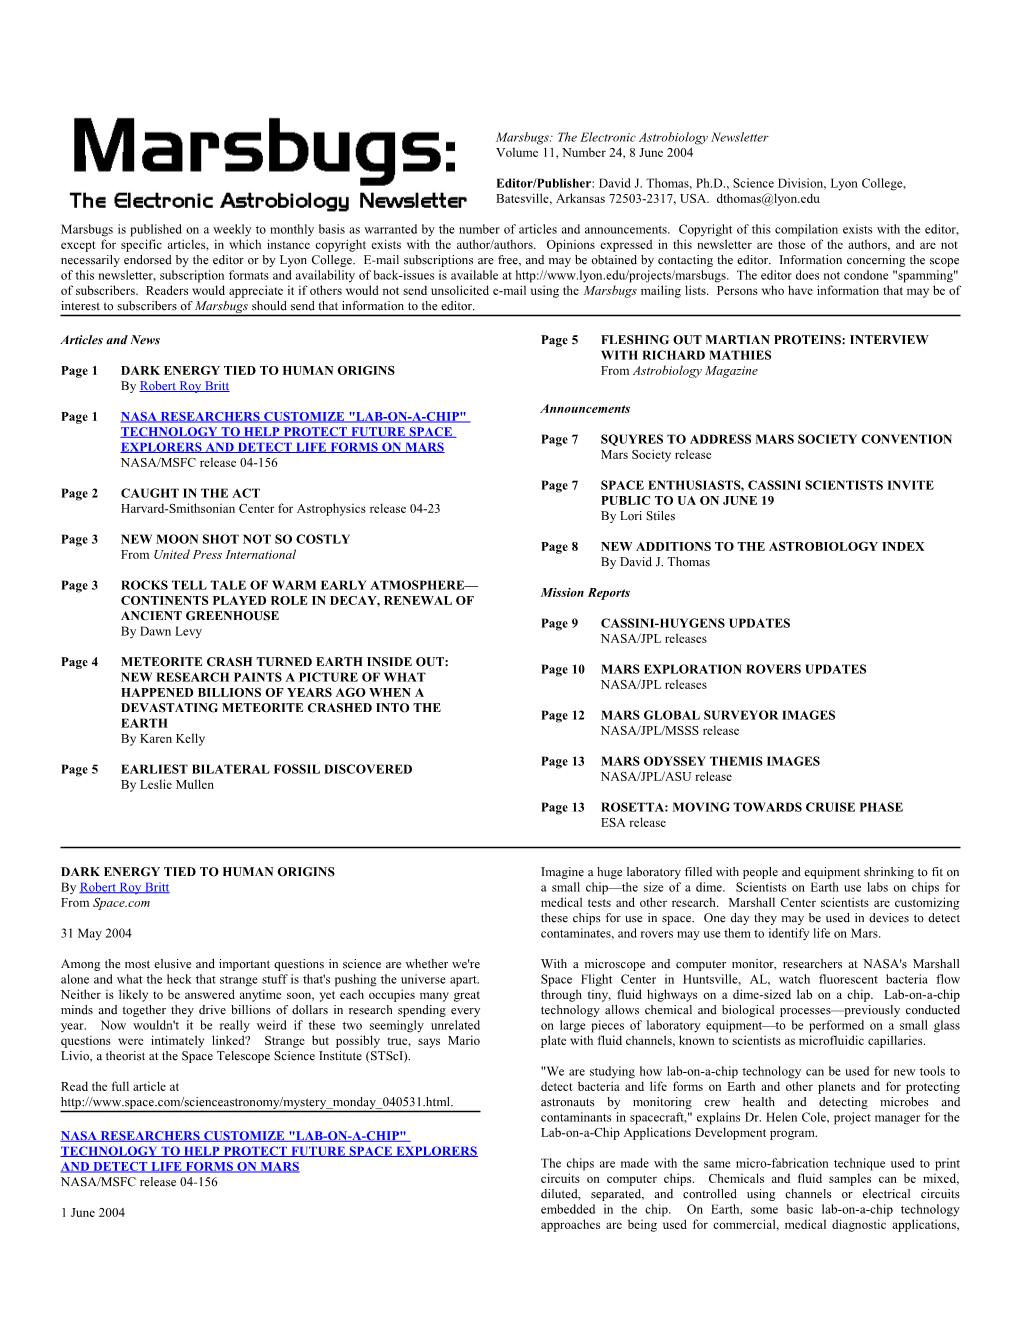 Marsbugs Vol. 11, No. 24